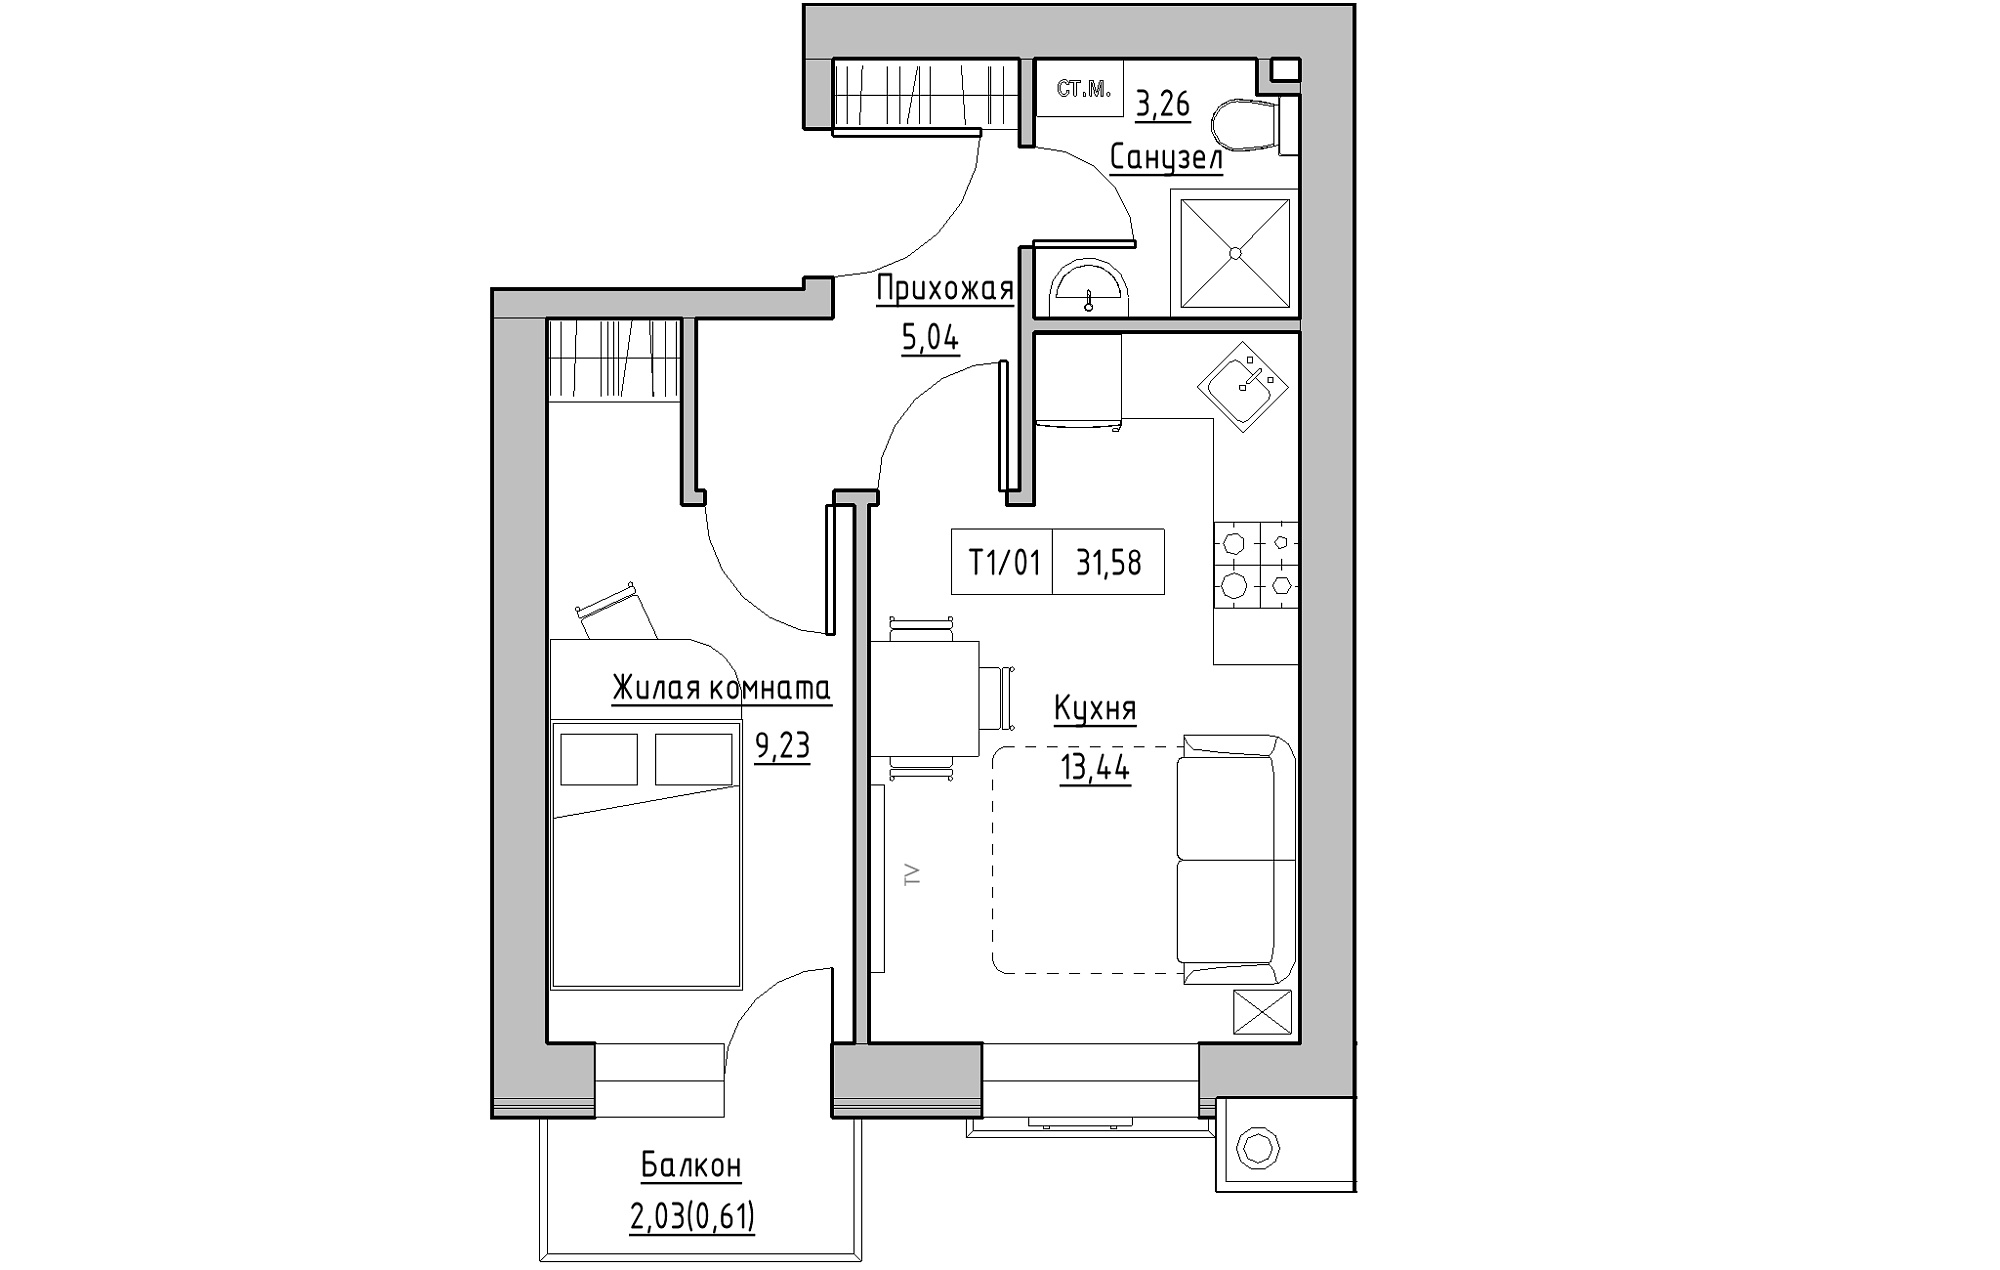 Планування 1-к квартира площею 31.58м2, KS-013-04/0011.